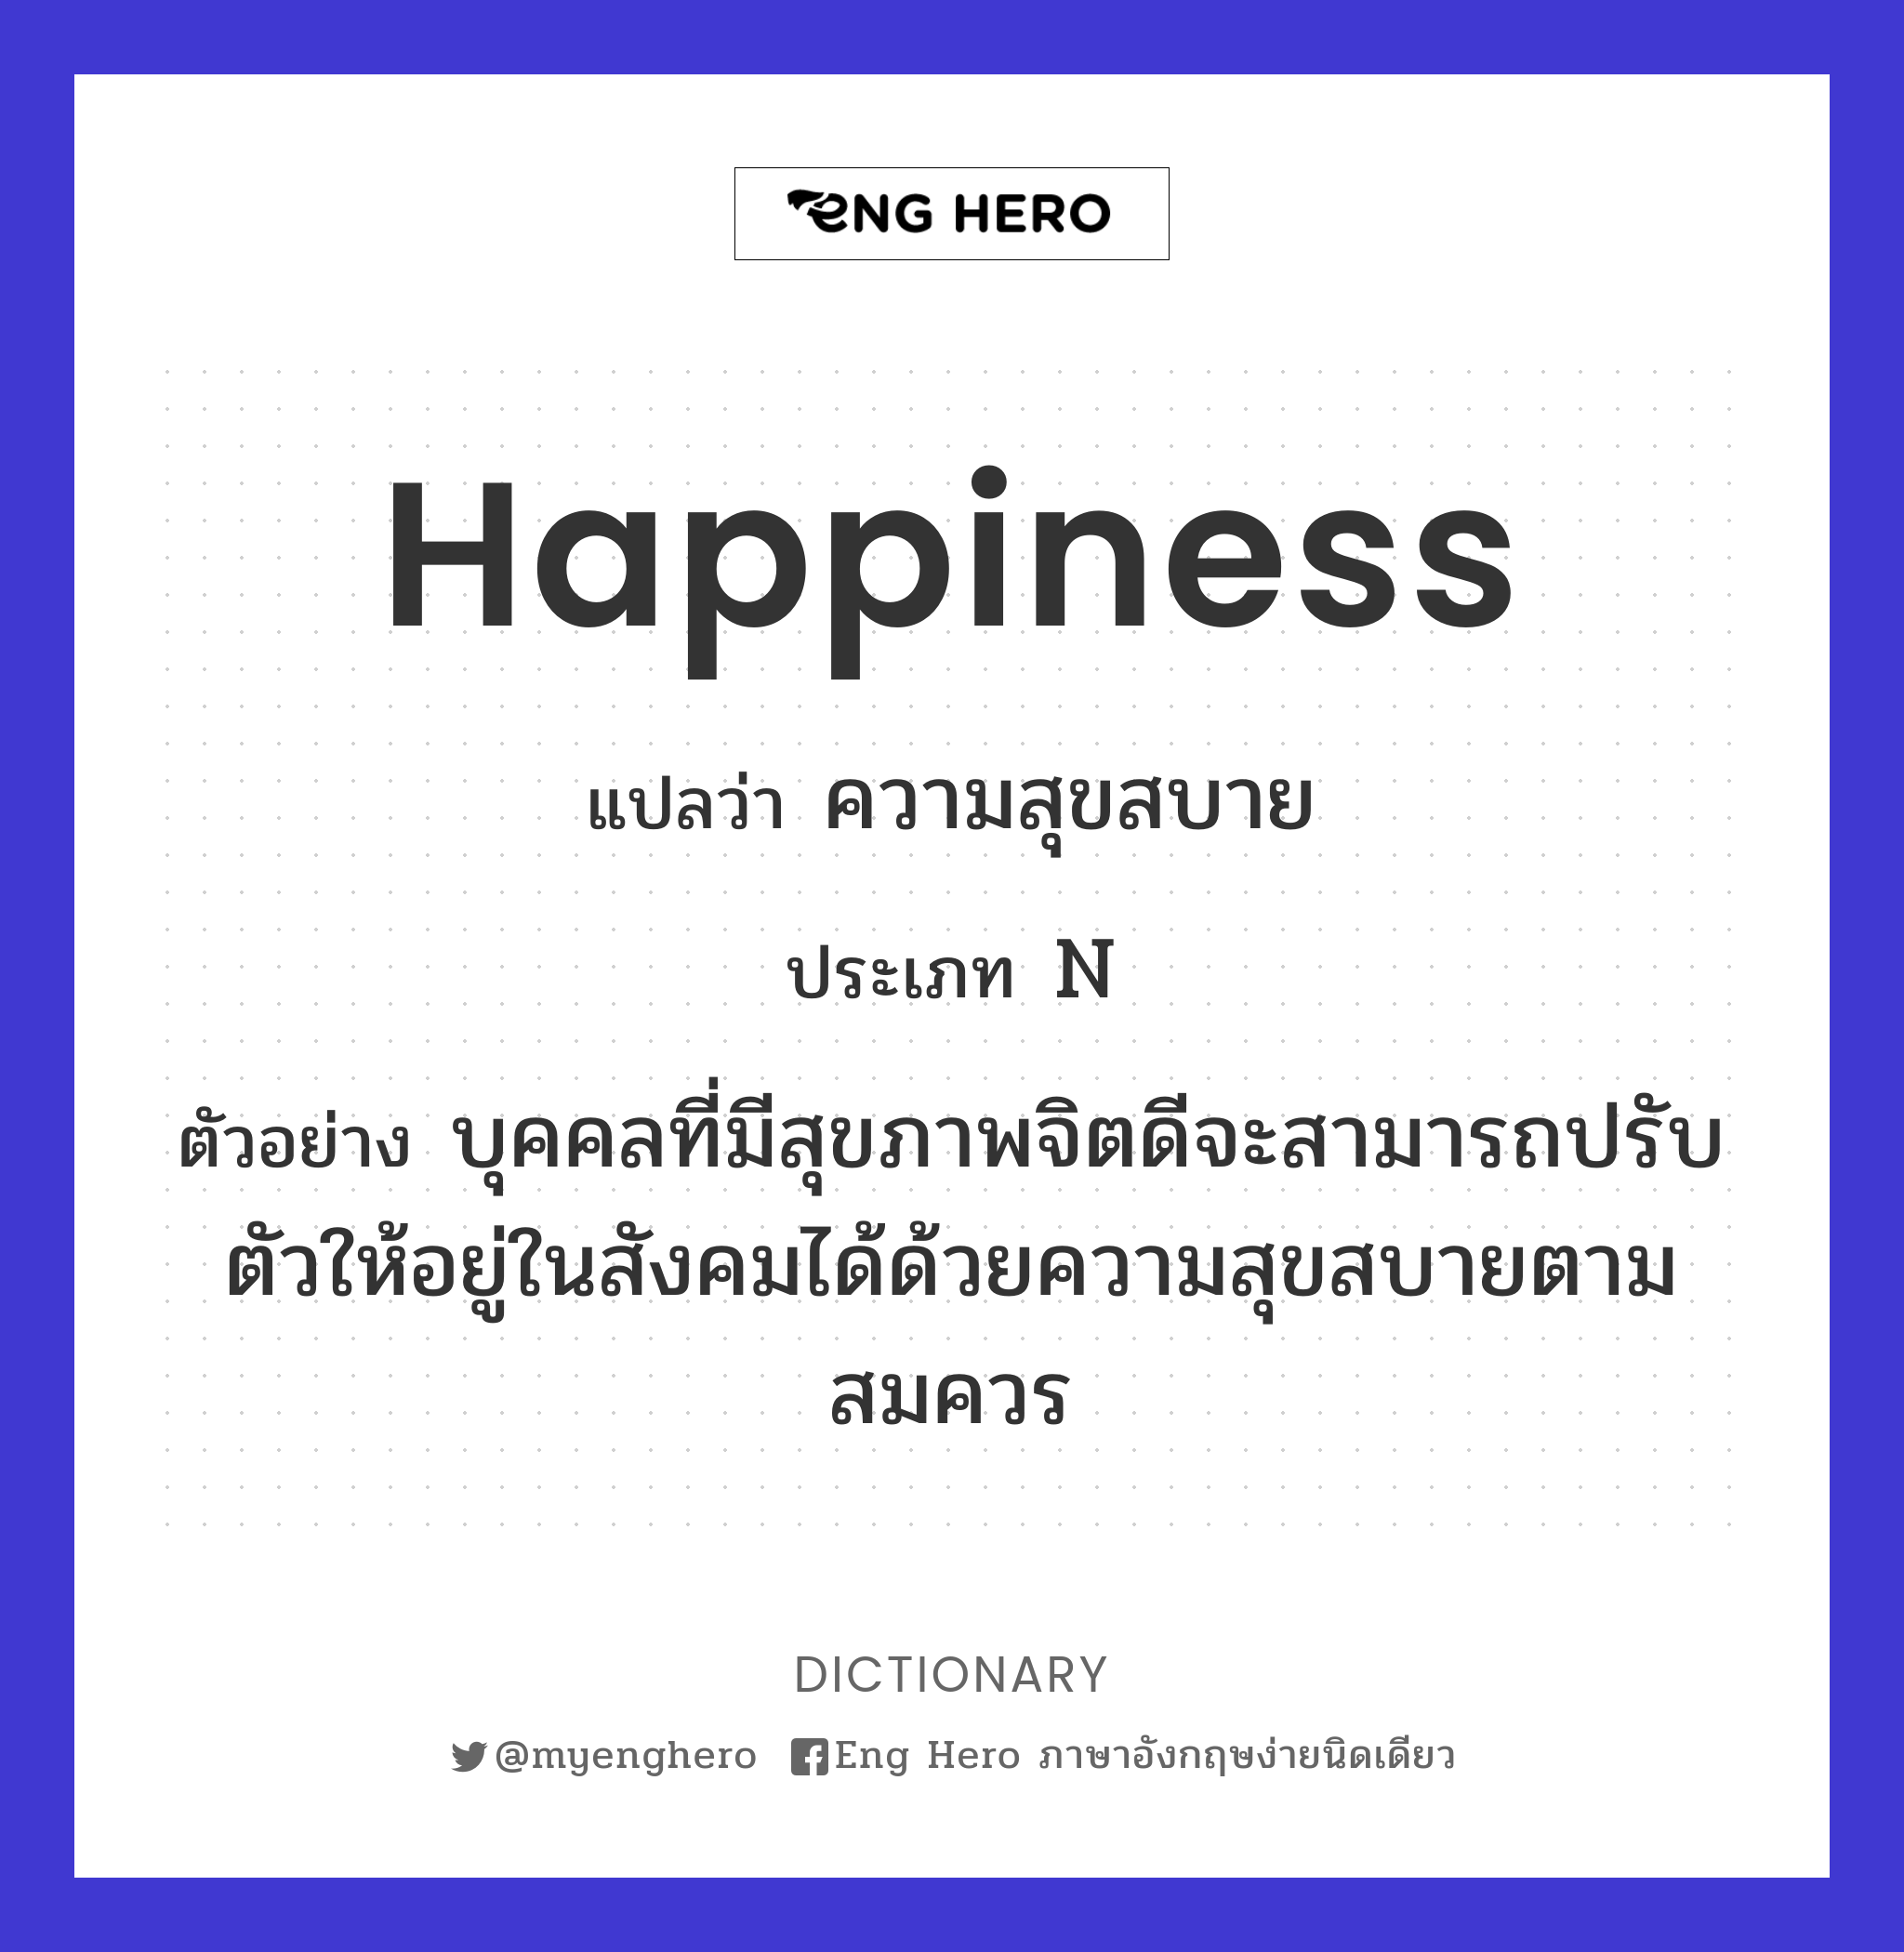 Happiness แปลว่า ความสุข, ความสงบสุข, ความสบายใจ, ความรื่นรมย์, ความสุขใจ |  Eng Hero เรียนภาษาอังกฤษ ออนไลน์ ฟรี